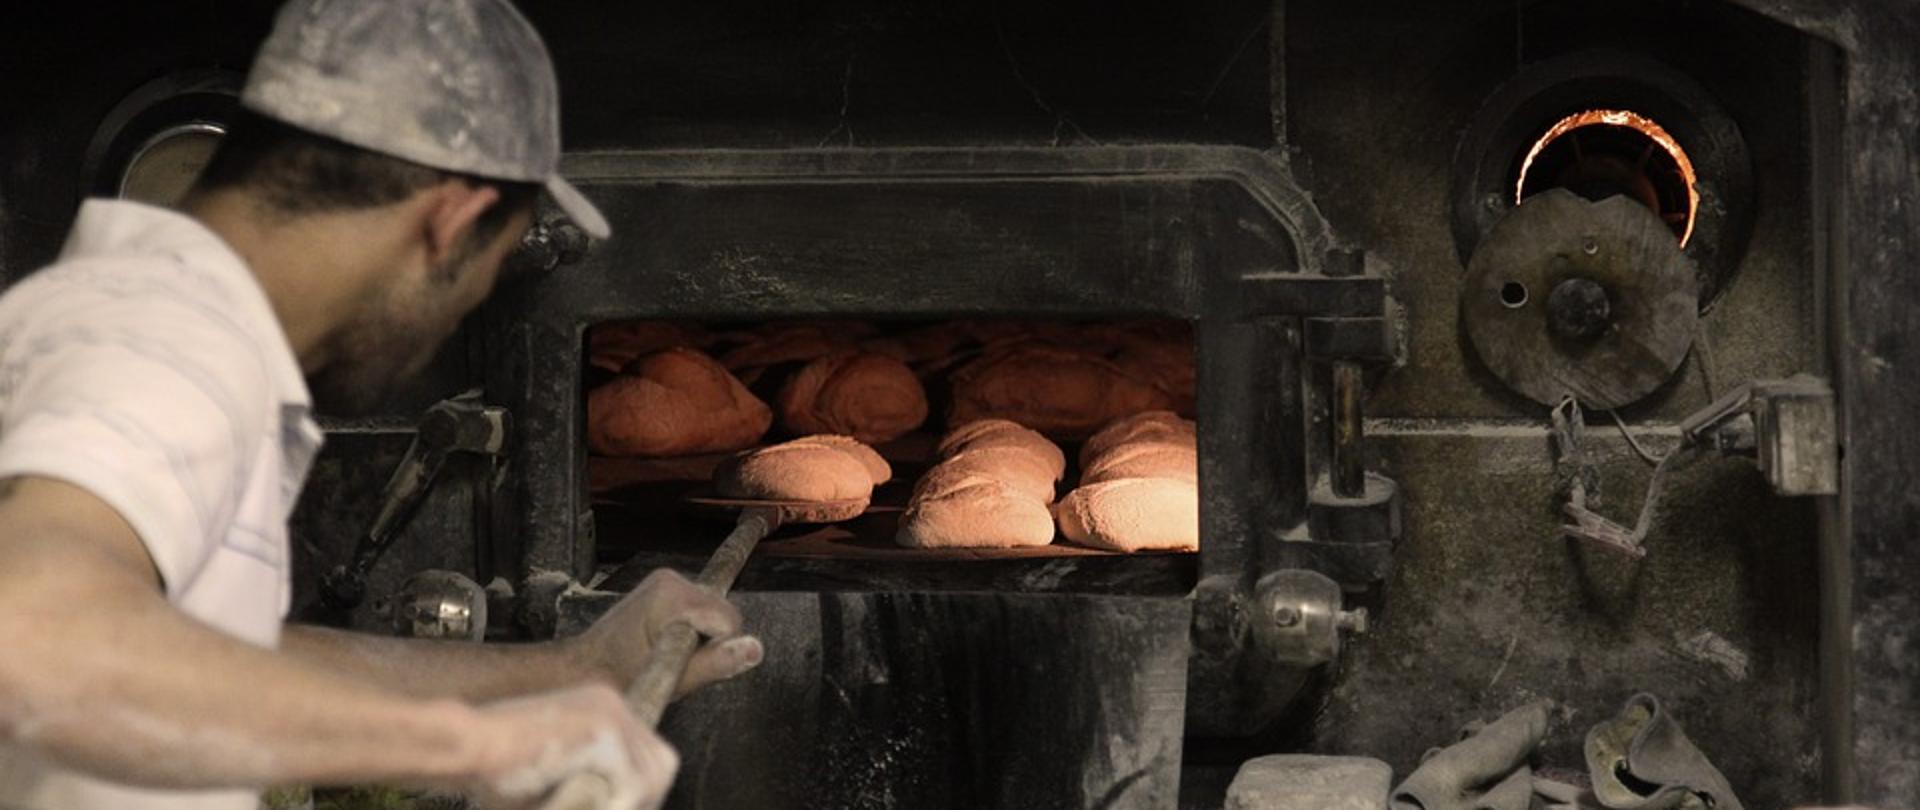 piekarz wkłada chleb do pieca